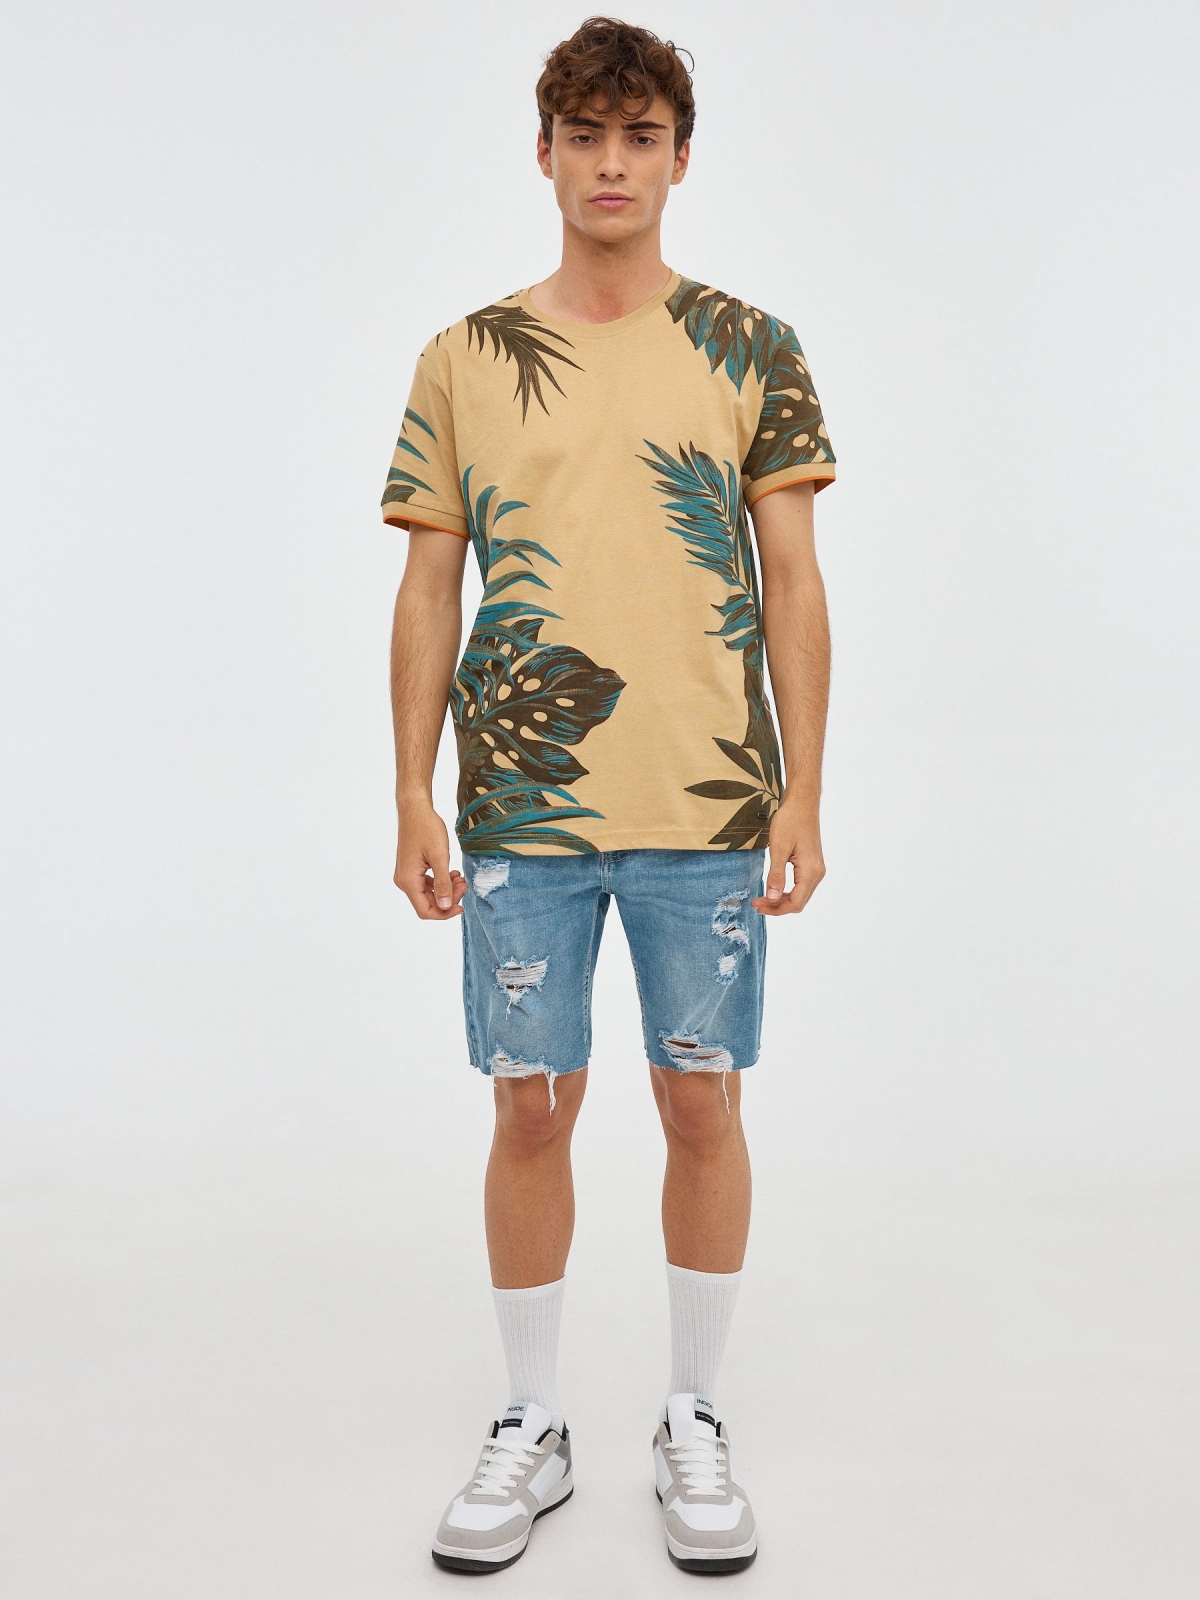 Camiseta hojas tropicales marrón tierra vista general frontal